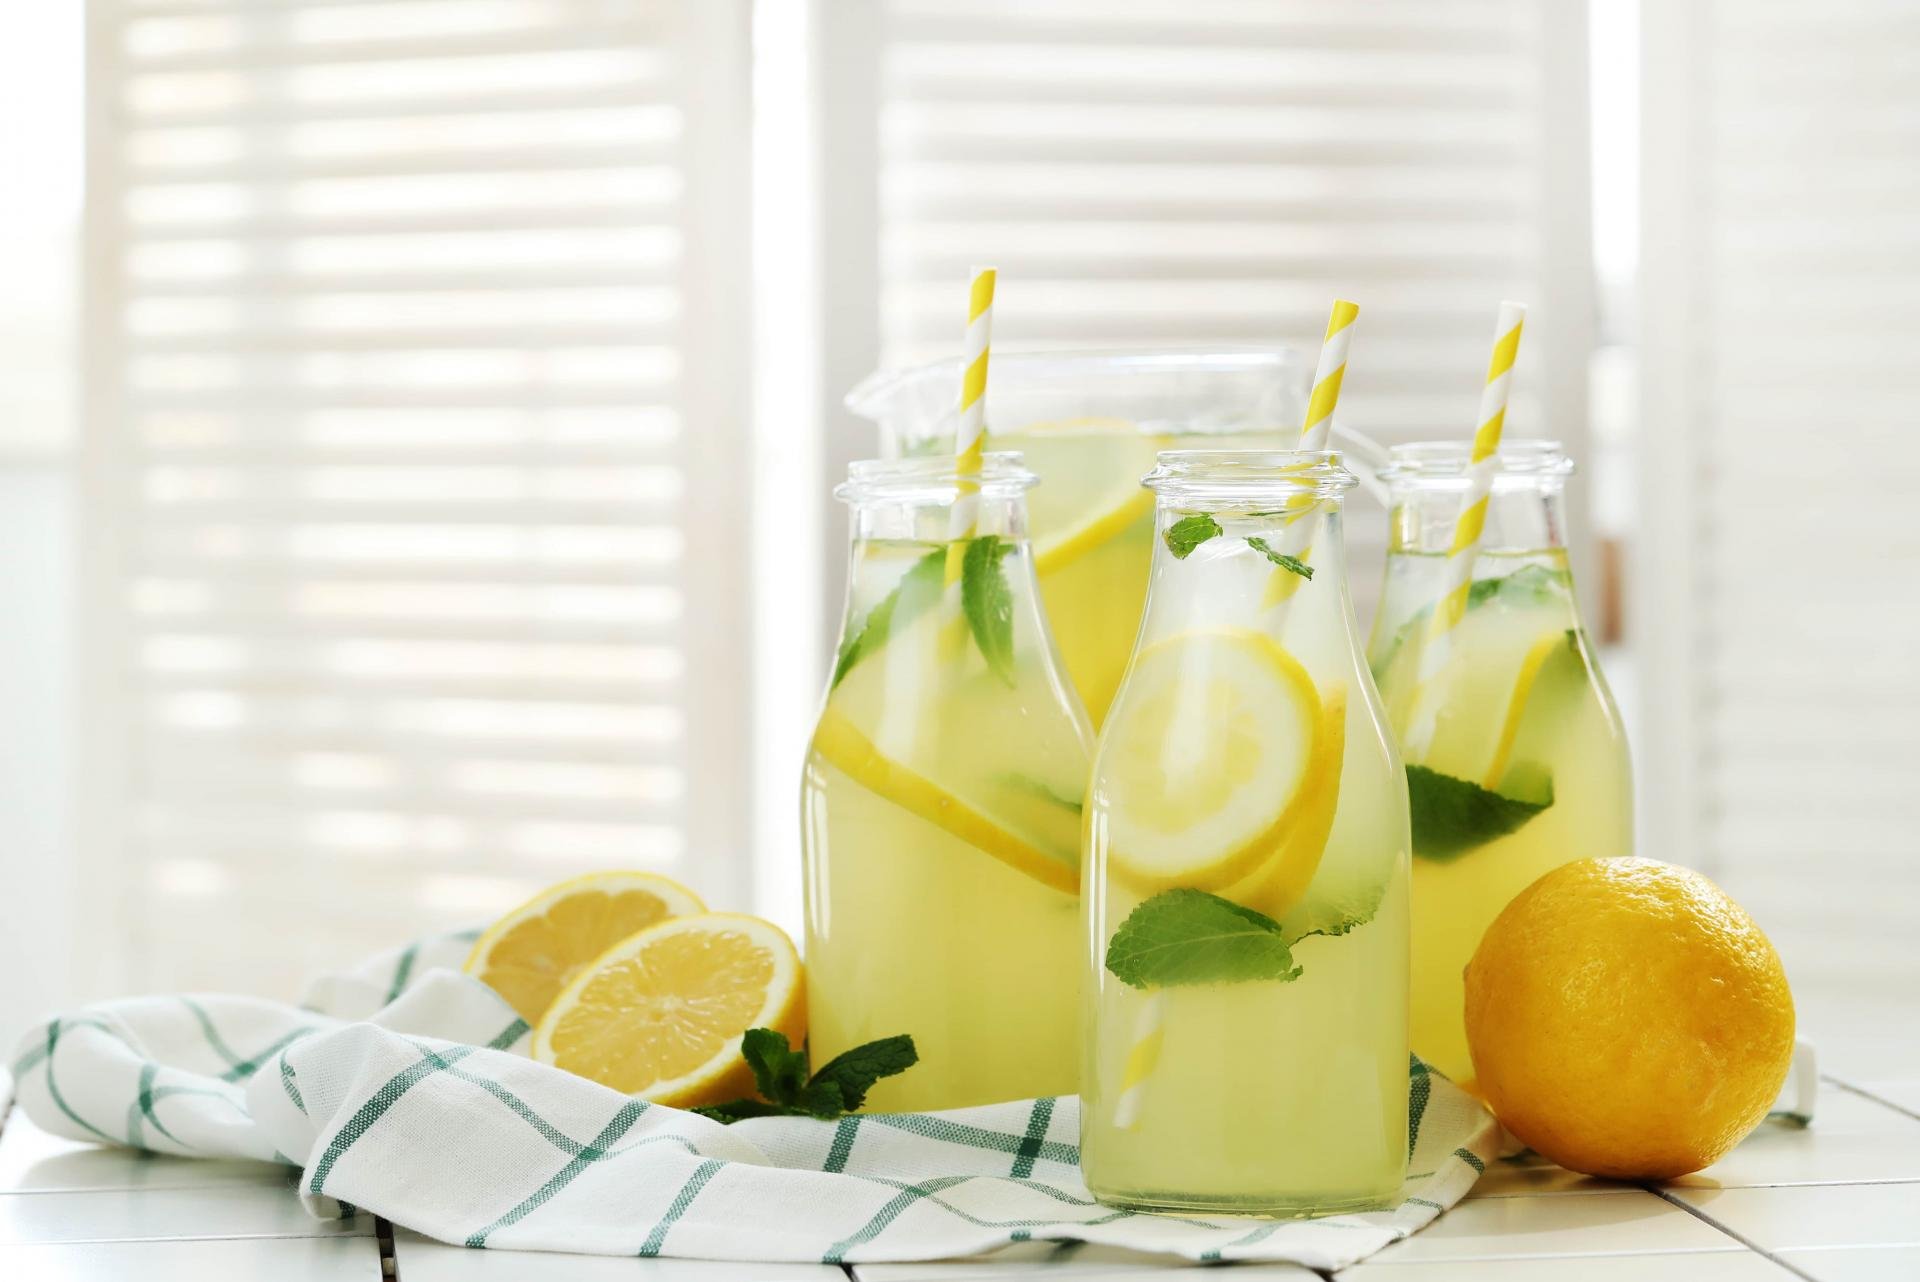 فوائد عصير الليمون فى رمضان.. يمد الجسم بالطاقة ويقضى على الإجهاد